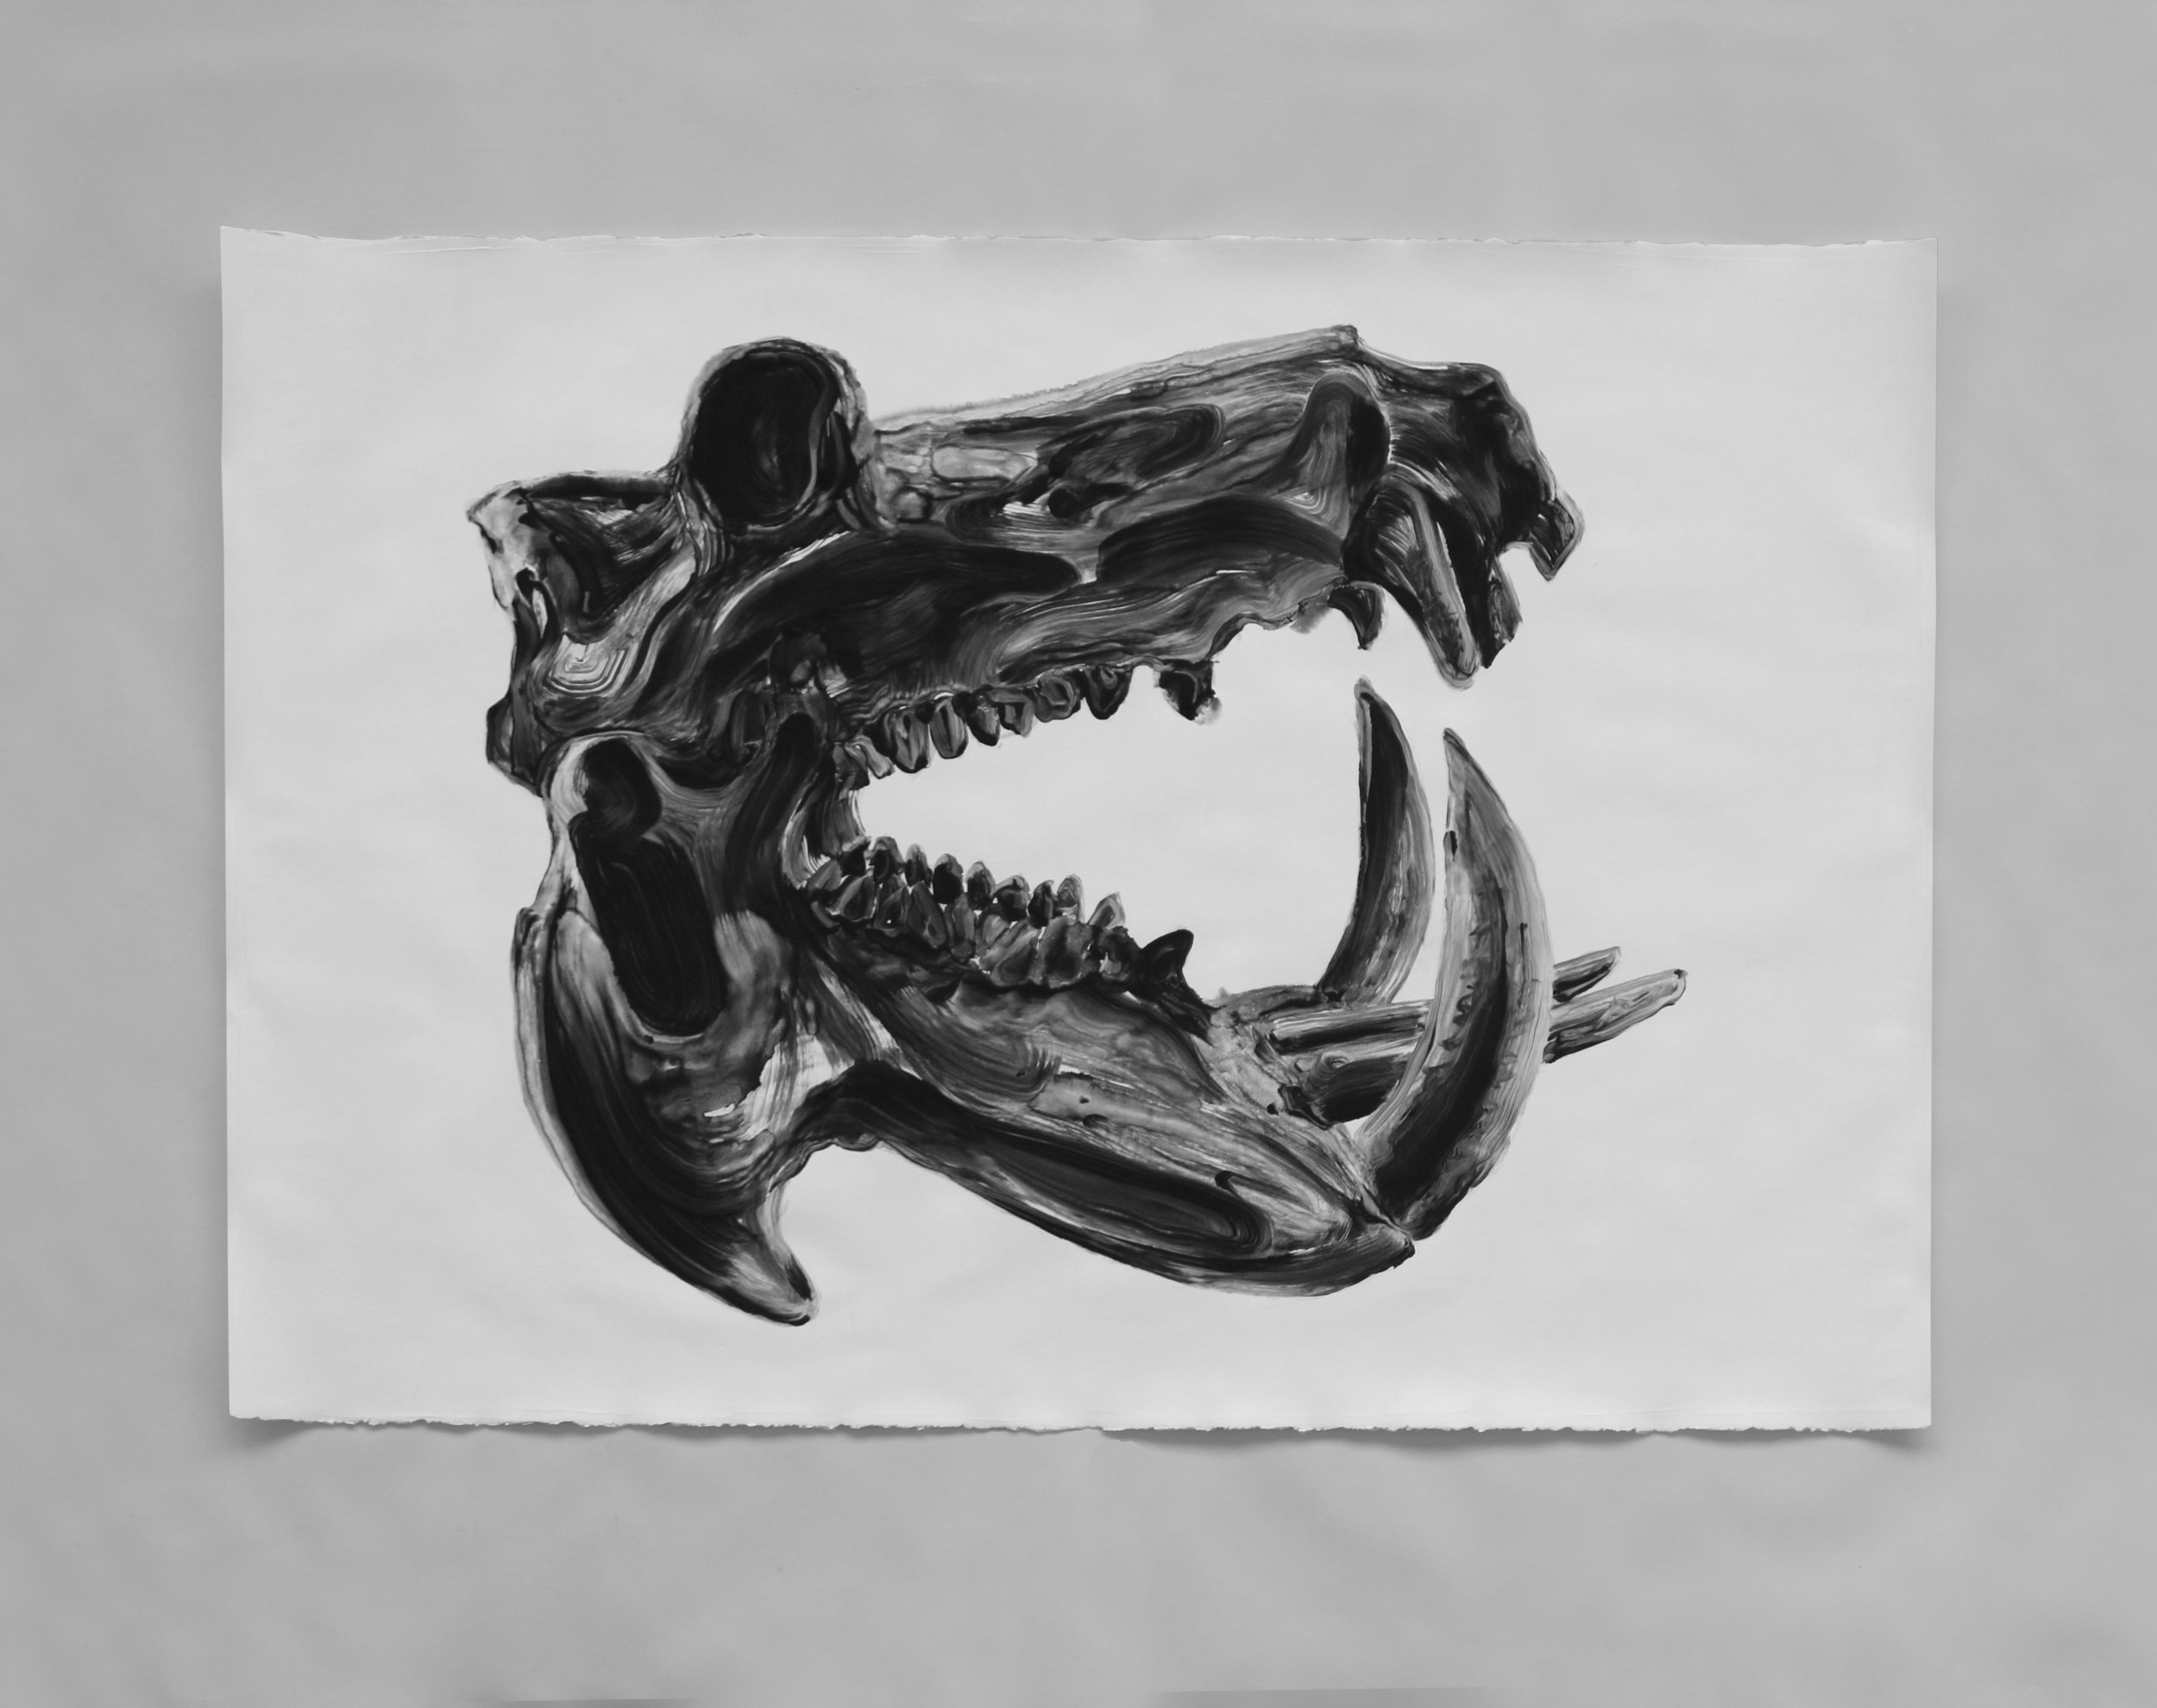  Crâne d'hippopotame / Hippopotamus skull  Huile sur papier / Oil on paper  45 X 31 in /&nbsp;114 X 78 cm 